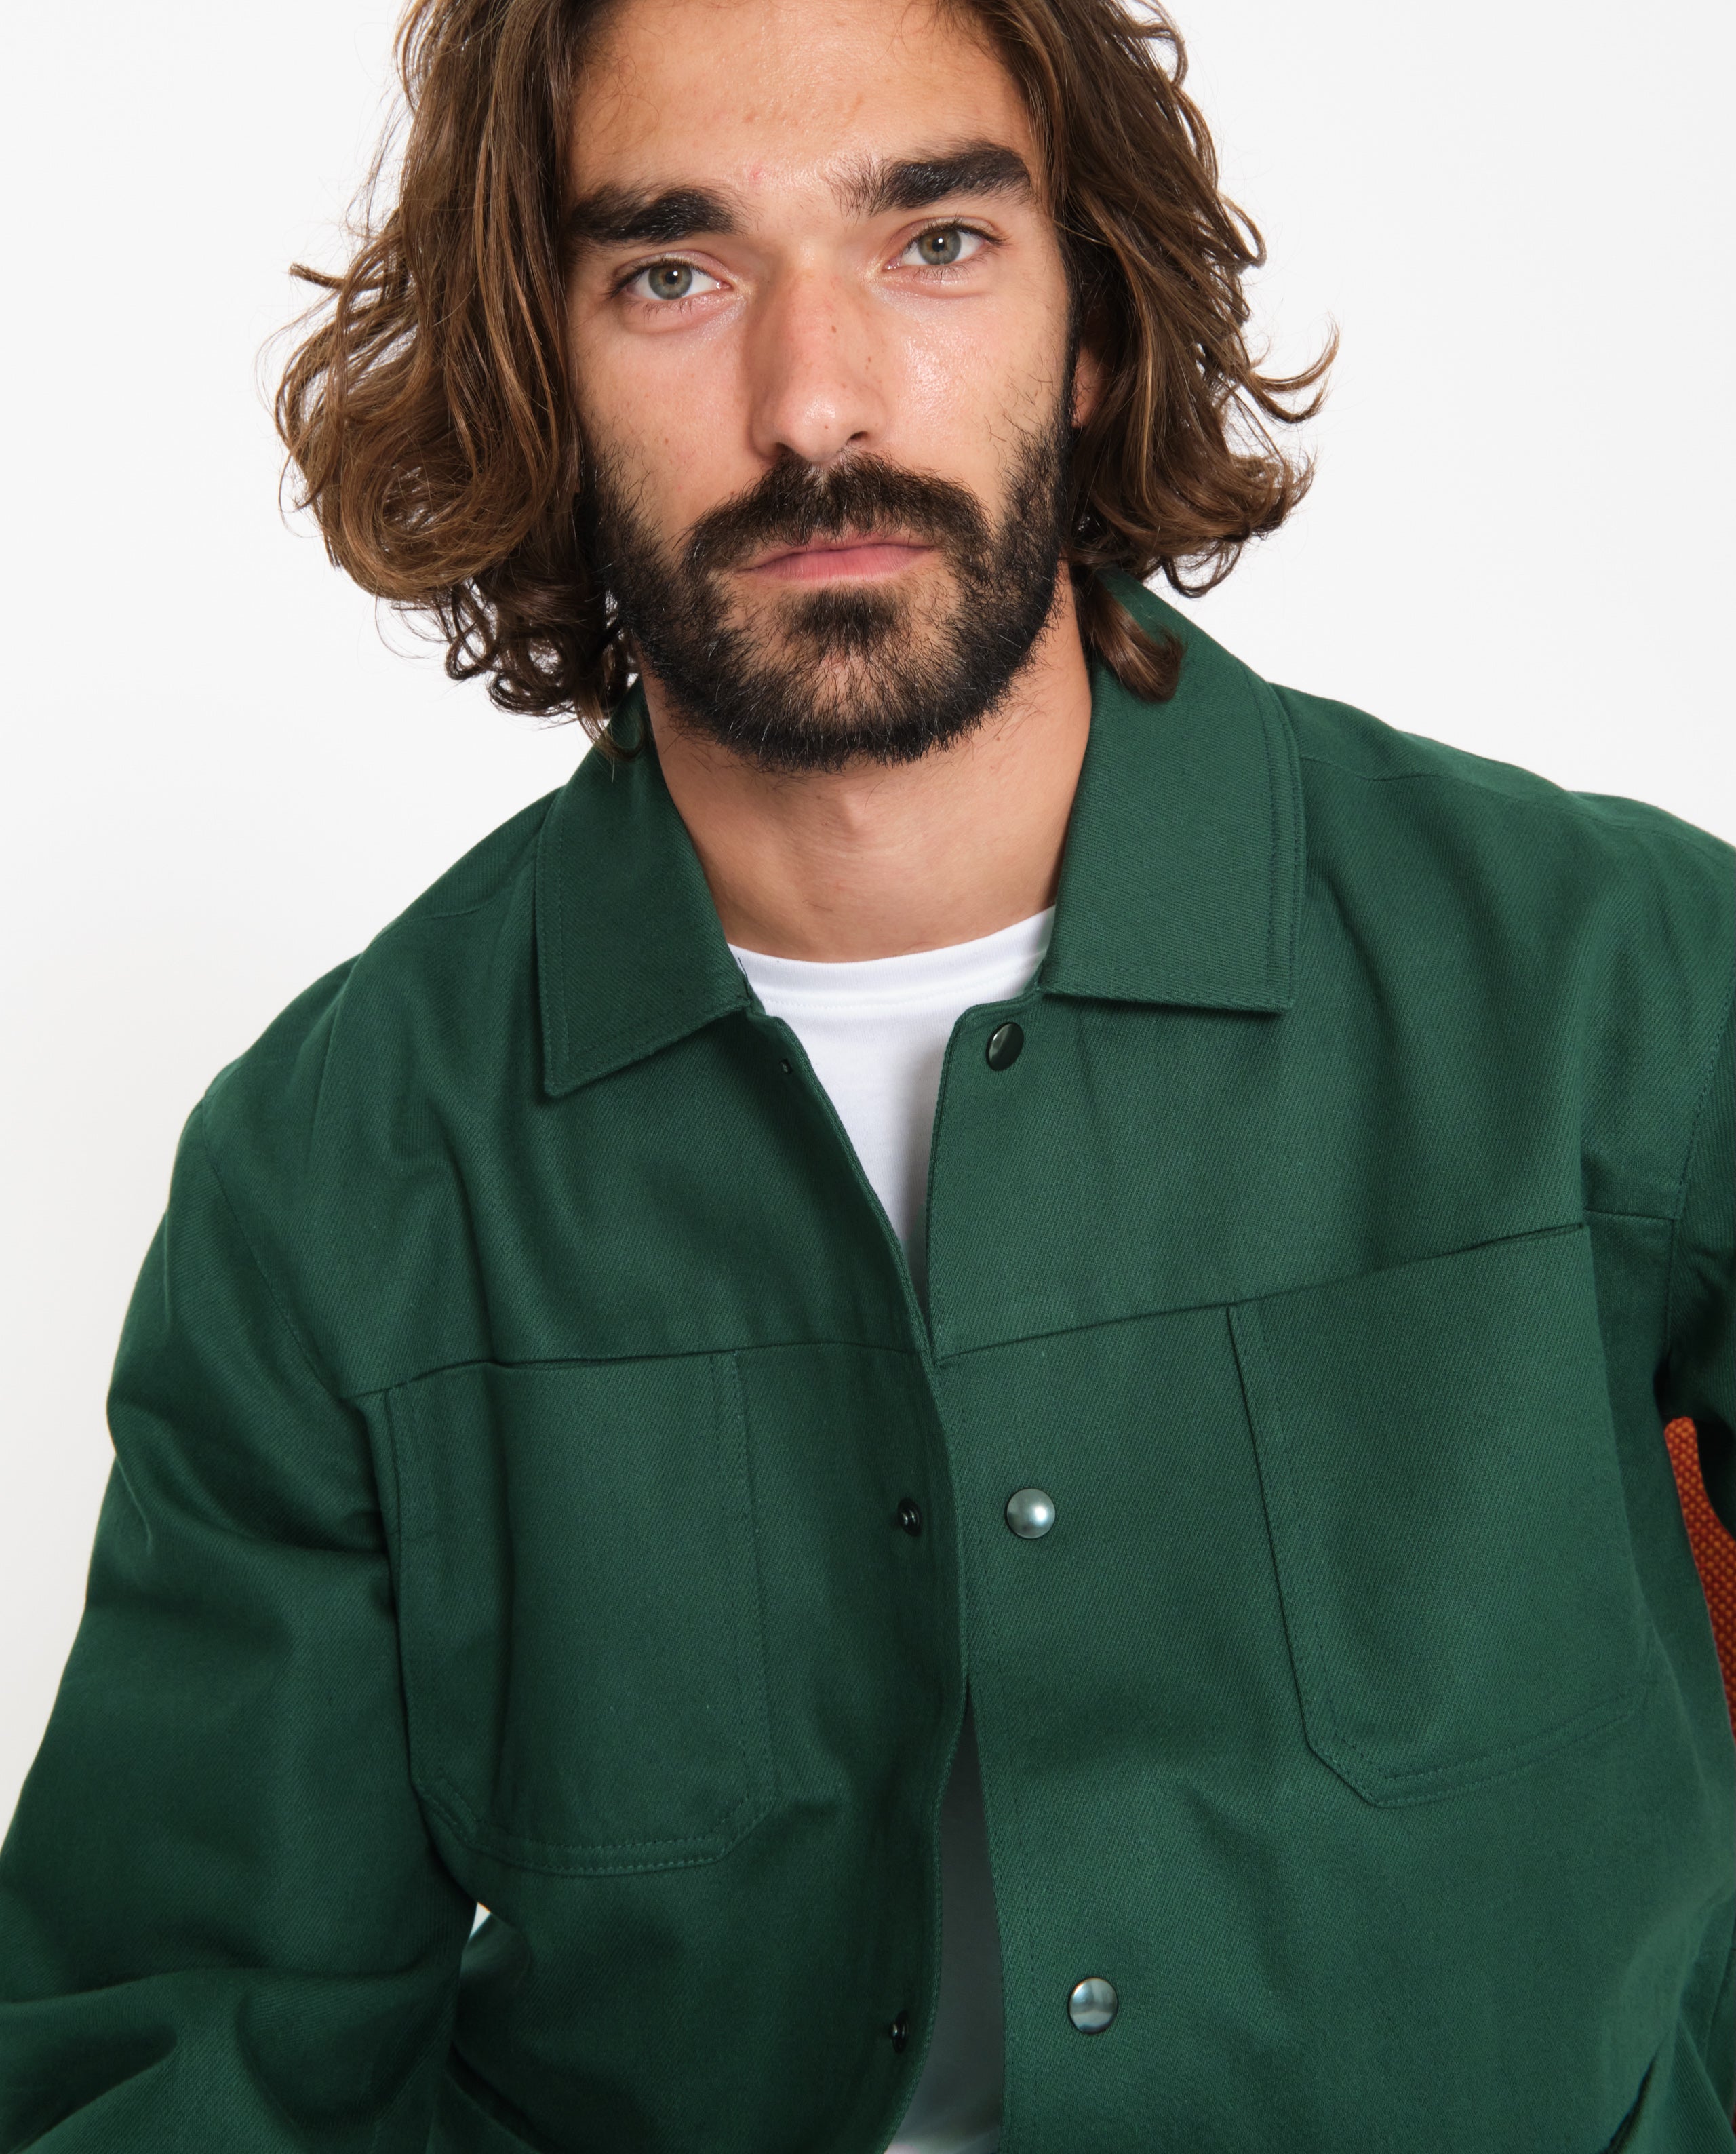 marché commun noyoco veste homme workwear travail éco-responsable coton recyclé lin éco-responsable vert bouteill